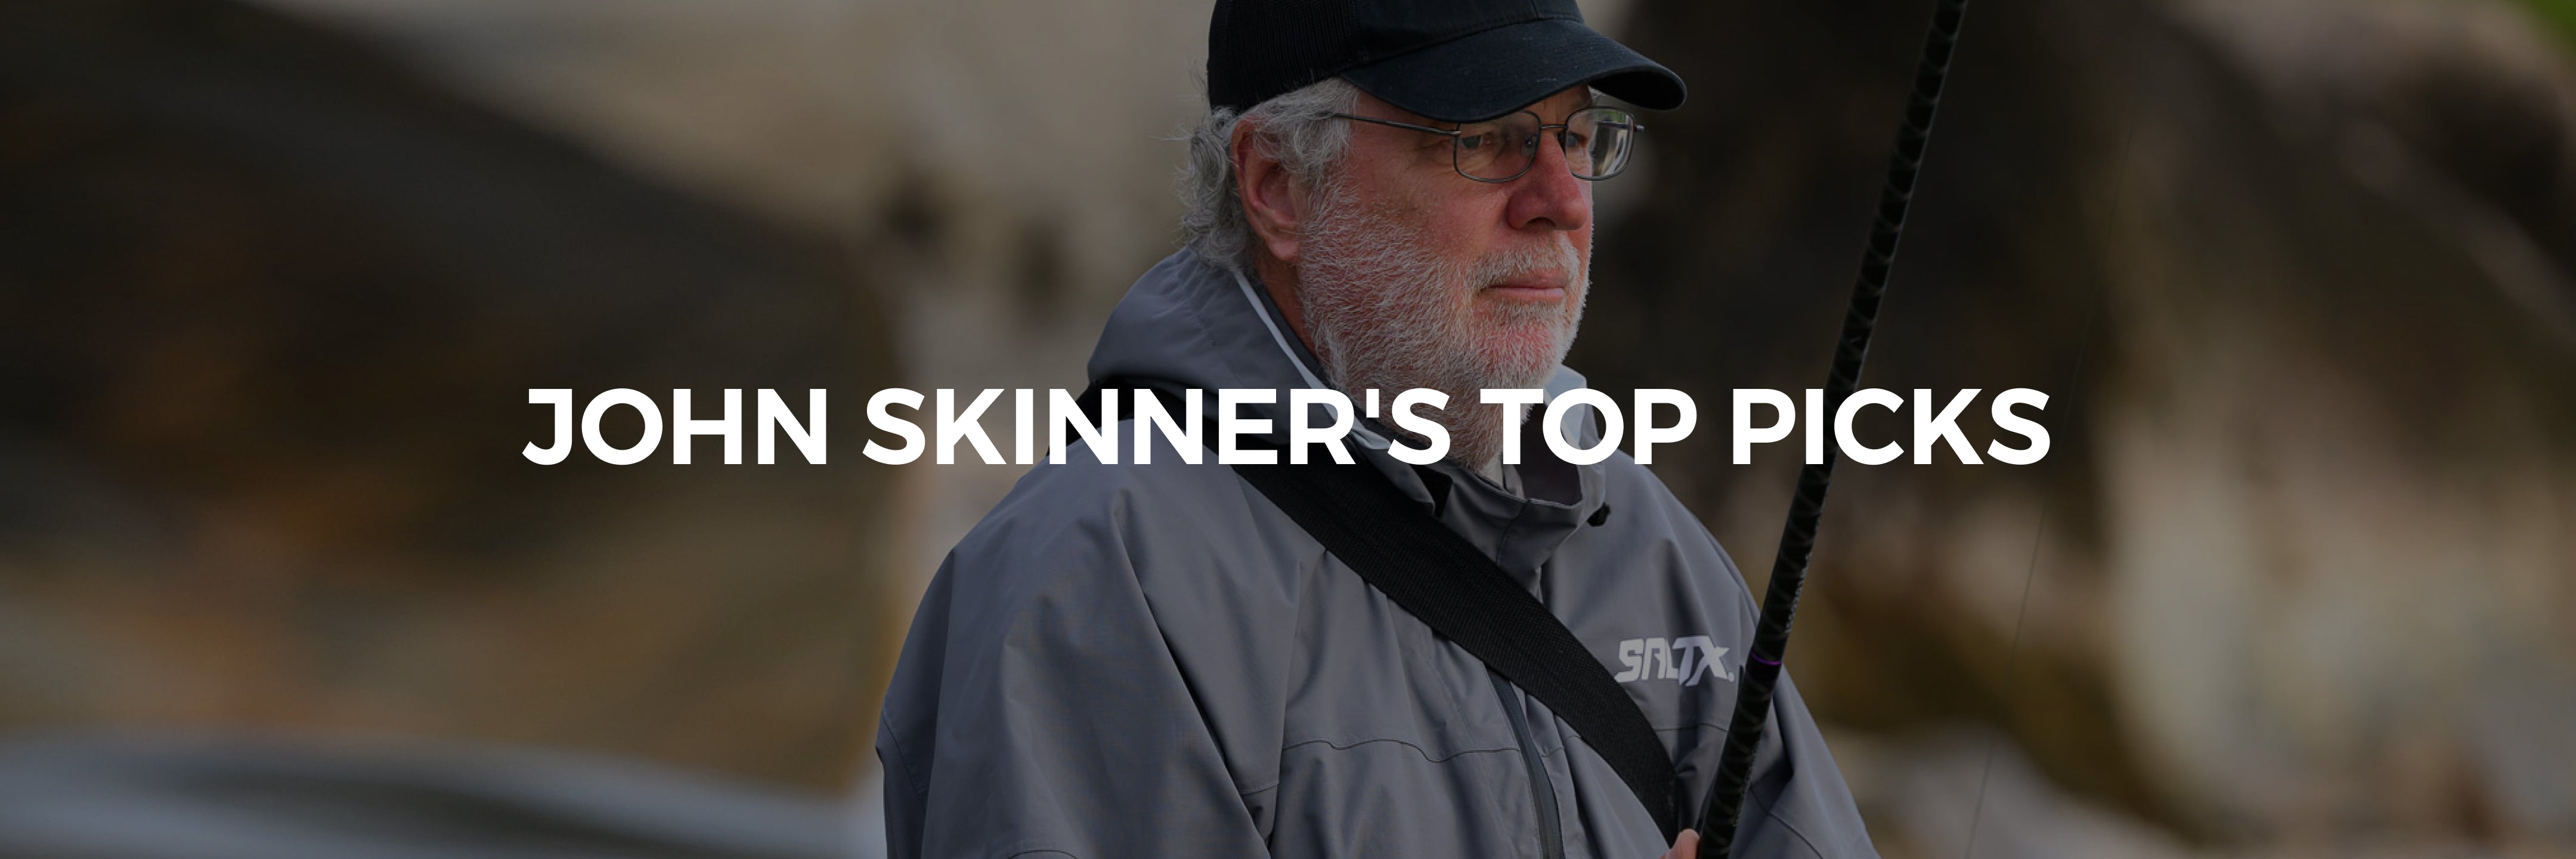 John Skinner's Top Picks